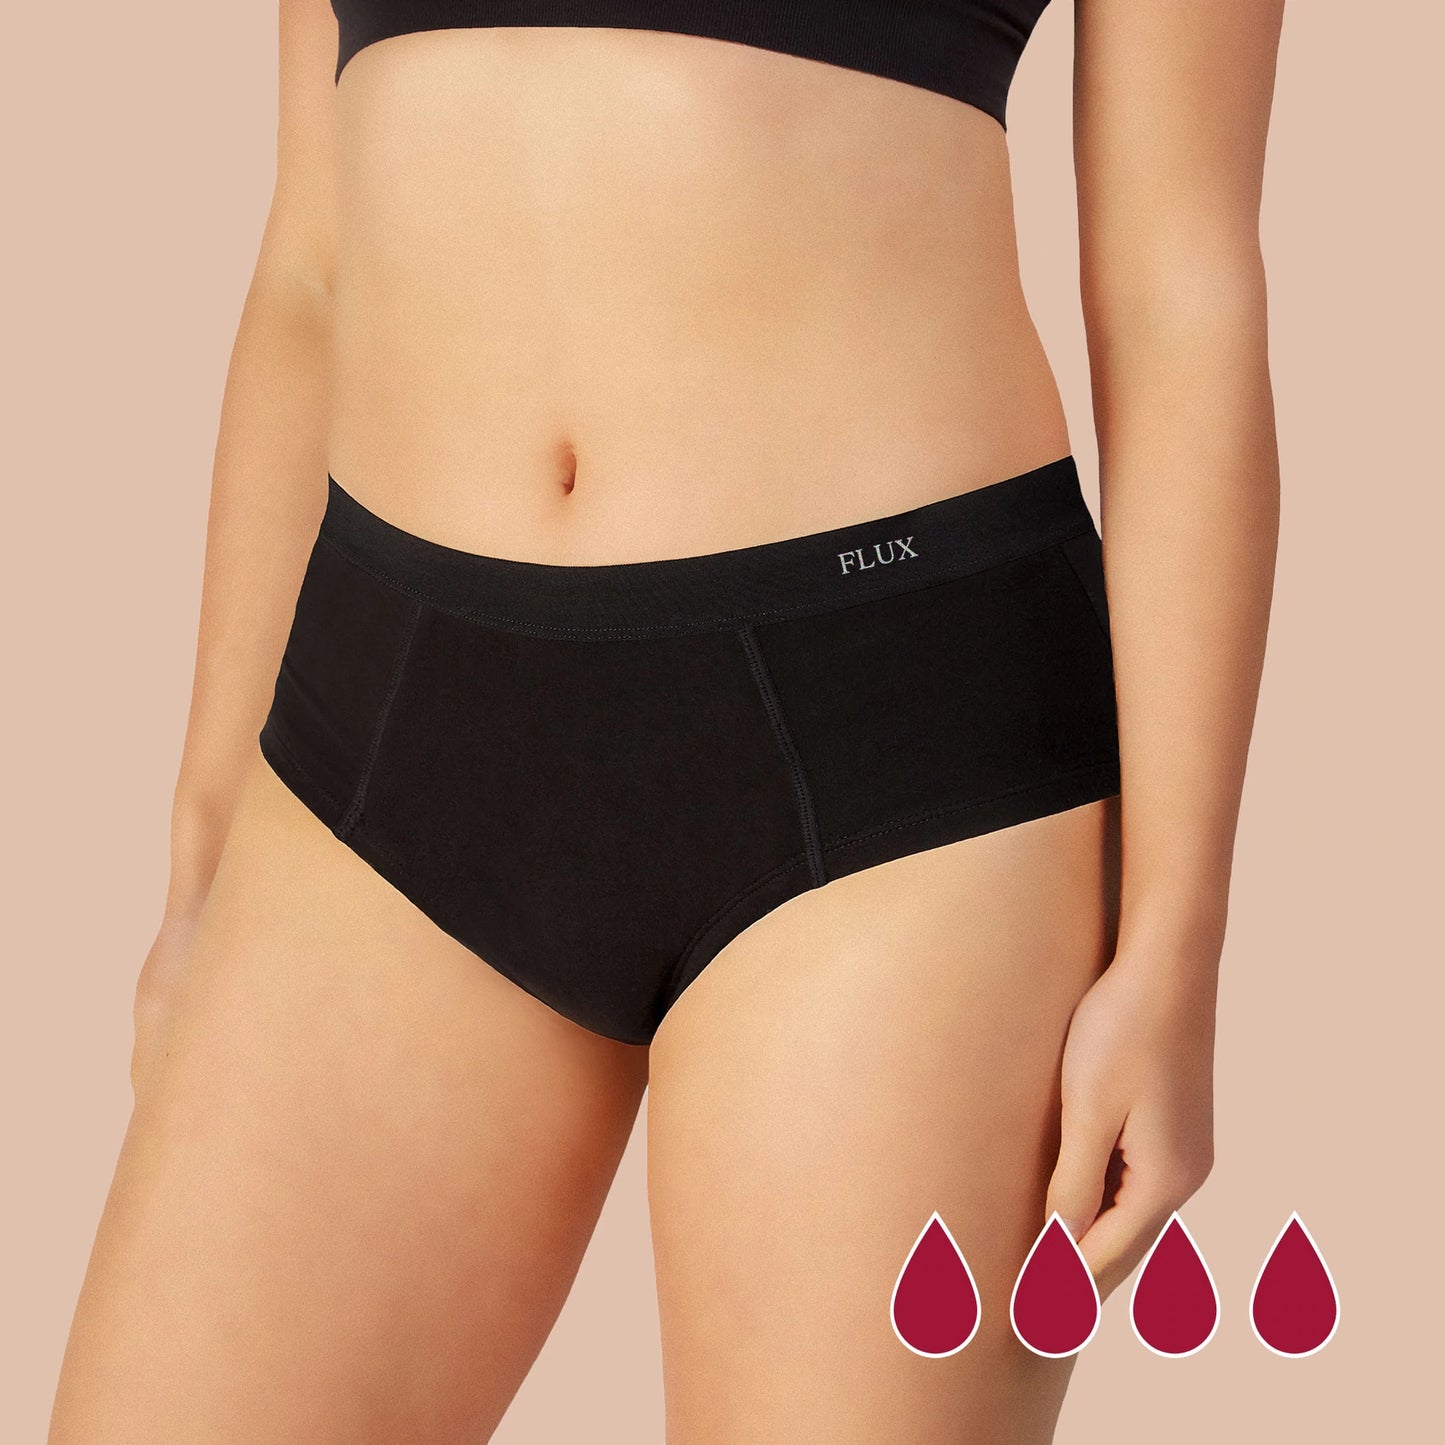 Period Underwear Briefs, Products